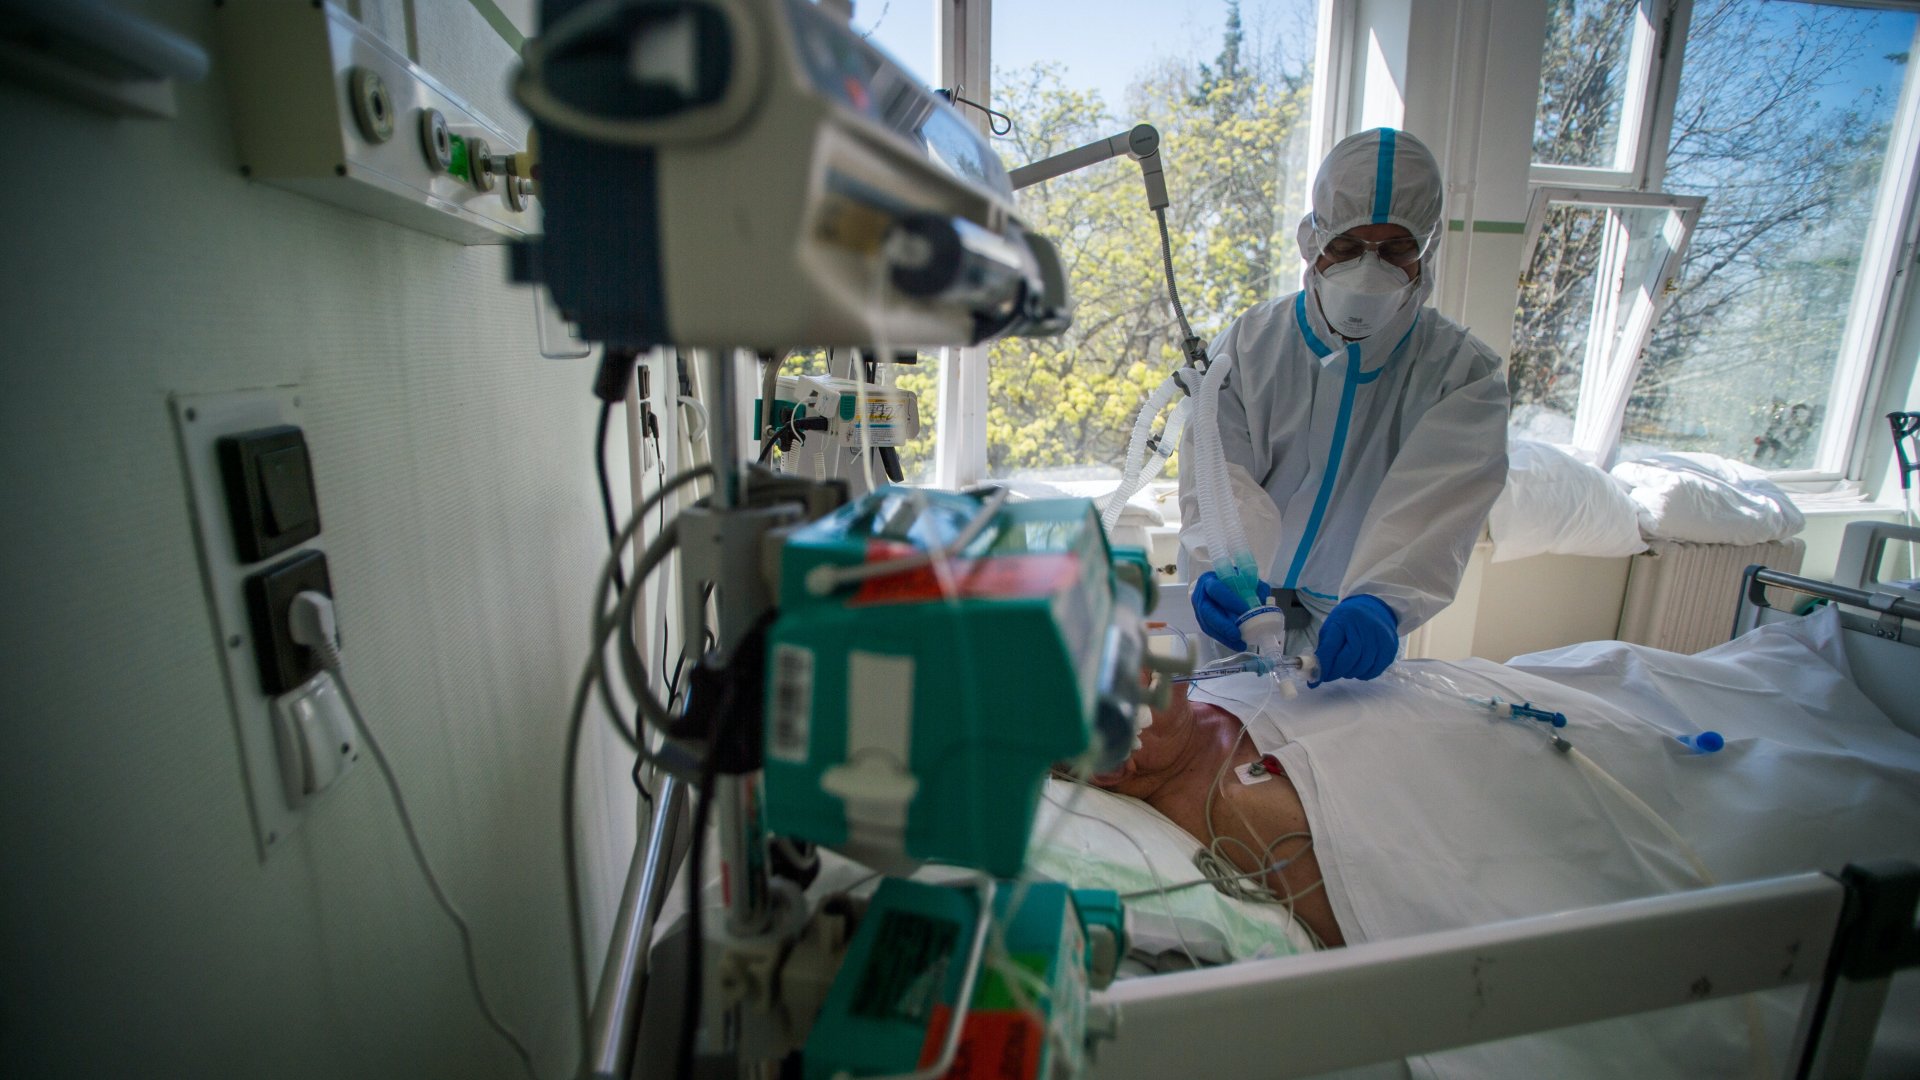 Koronavírusos beteget ápolnak egy kórházban